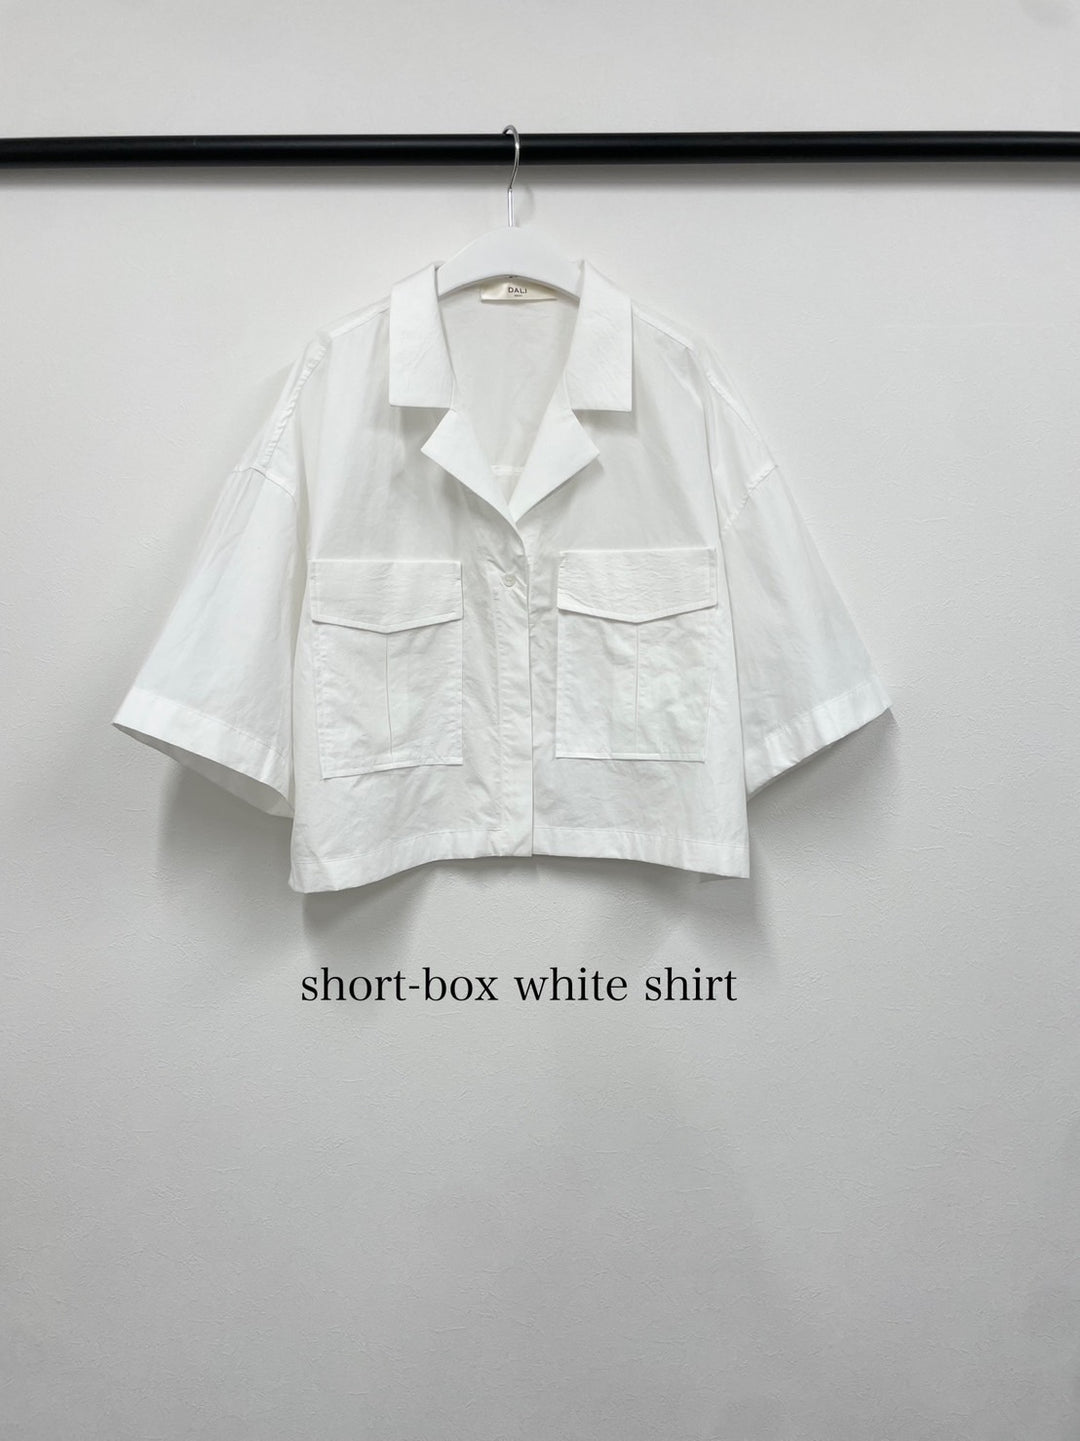 ショートボックスホワイトシャツ